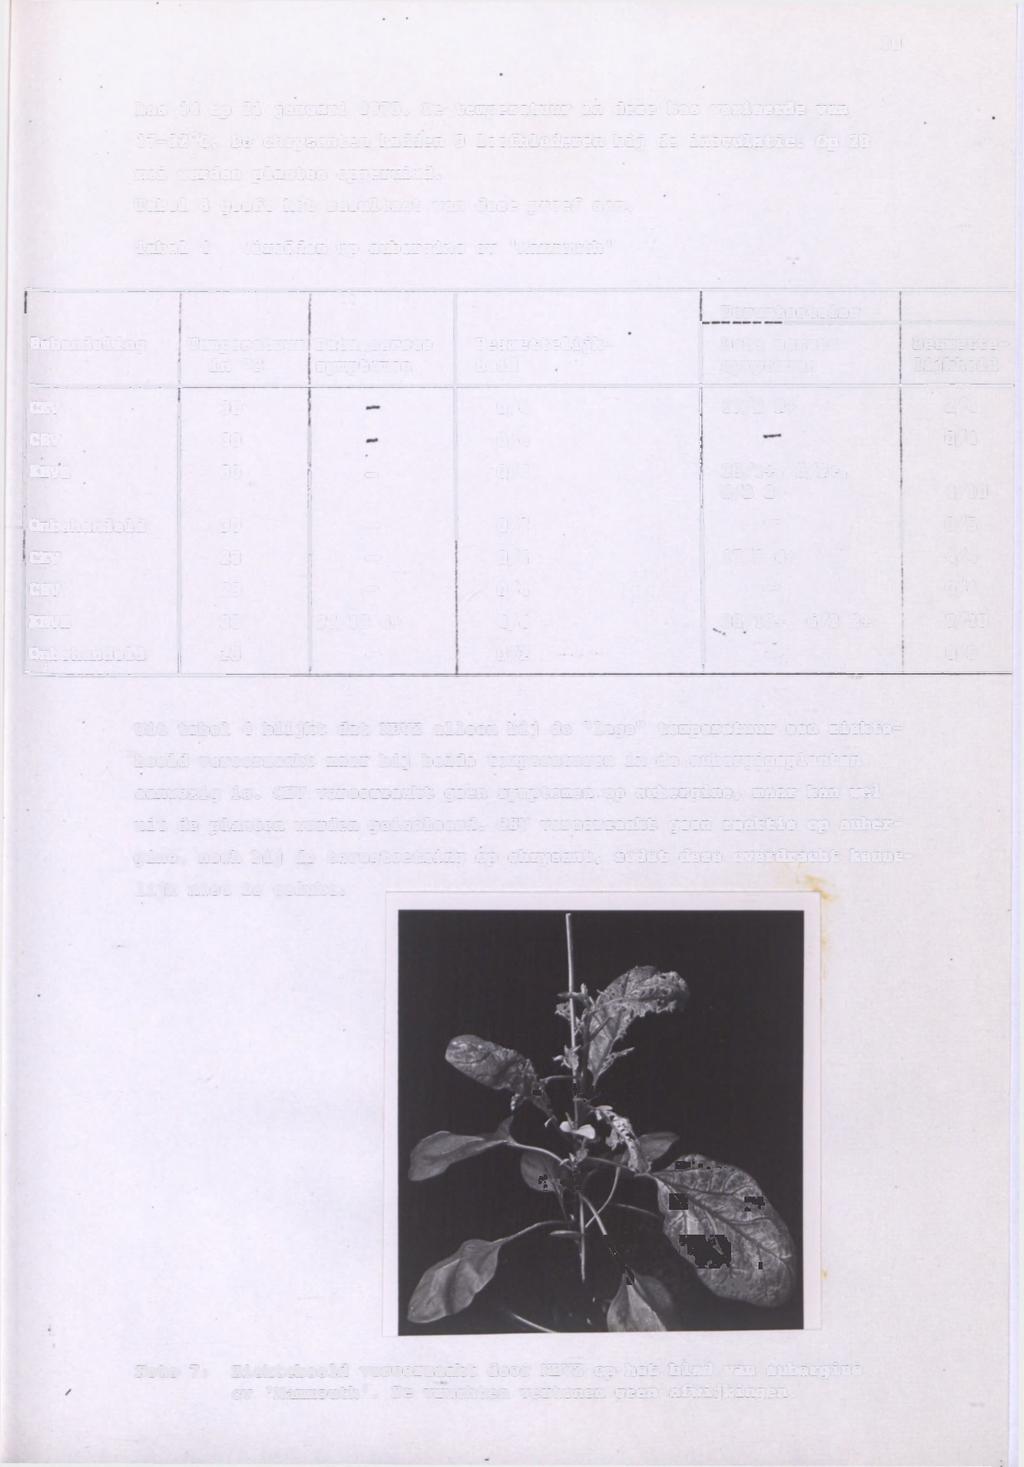 0 kas 4 op 2 januar 975. De temperatuur n deze kas vareerde van 7-32 C. De chrysanten hadden 9 loofbladeren bj de noculate. Op 28 me werden planten opgerumd.